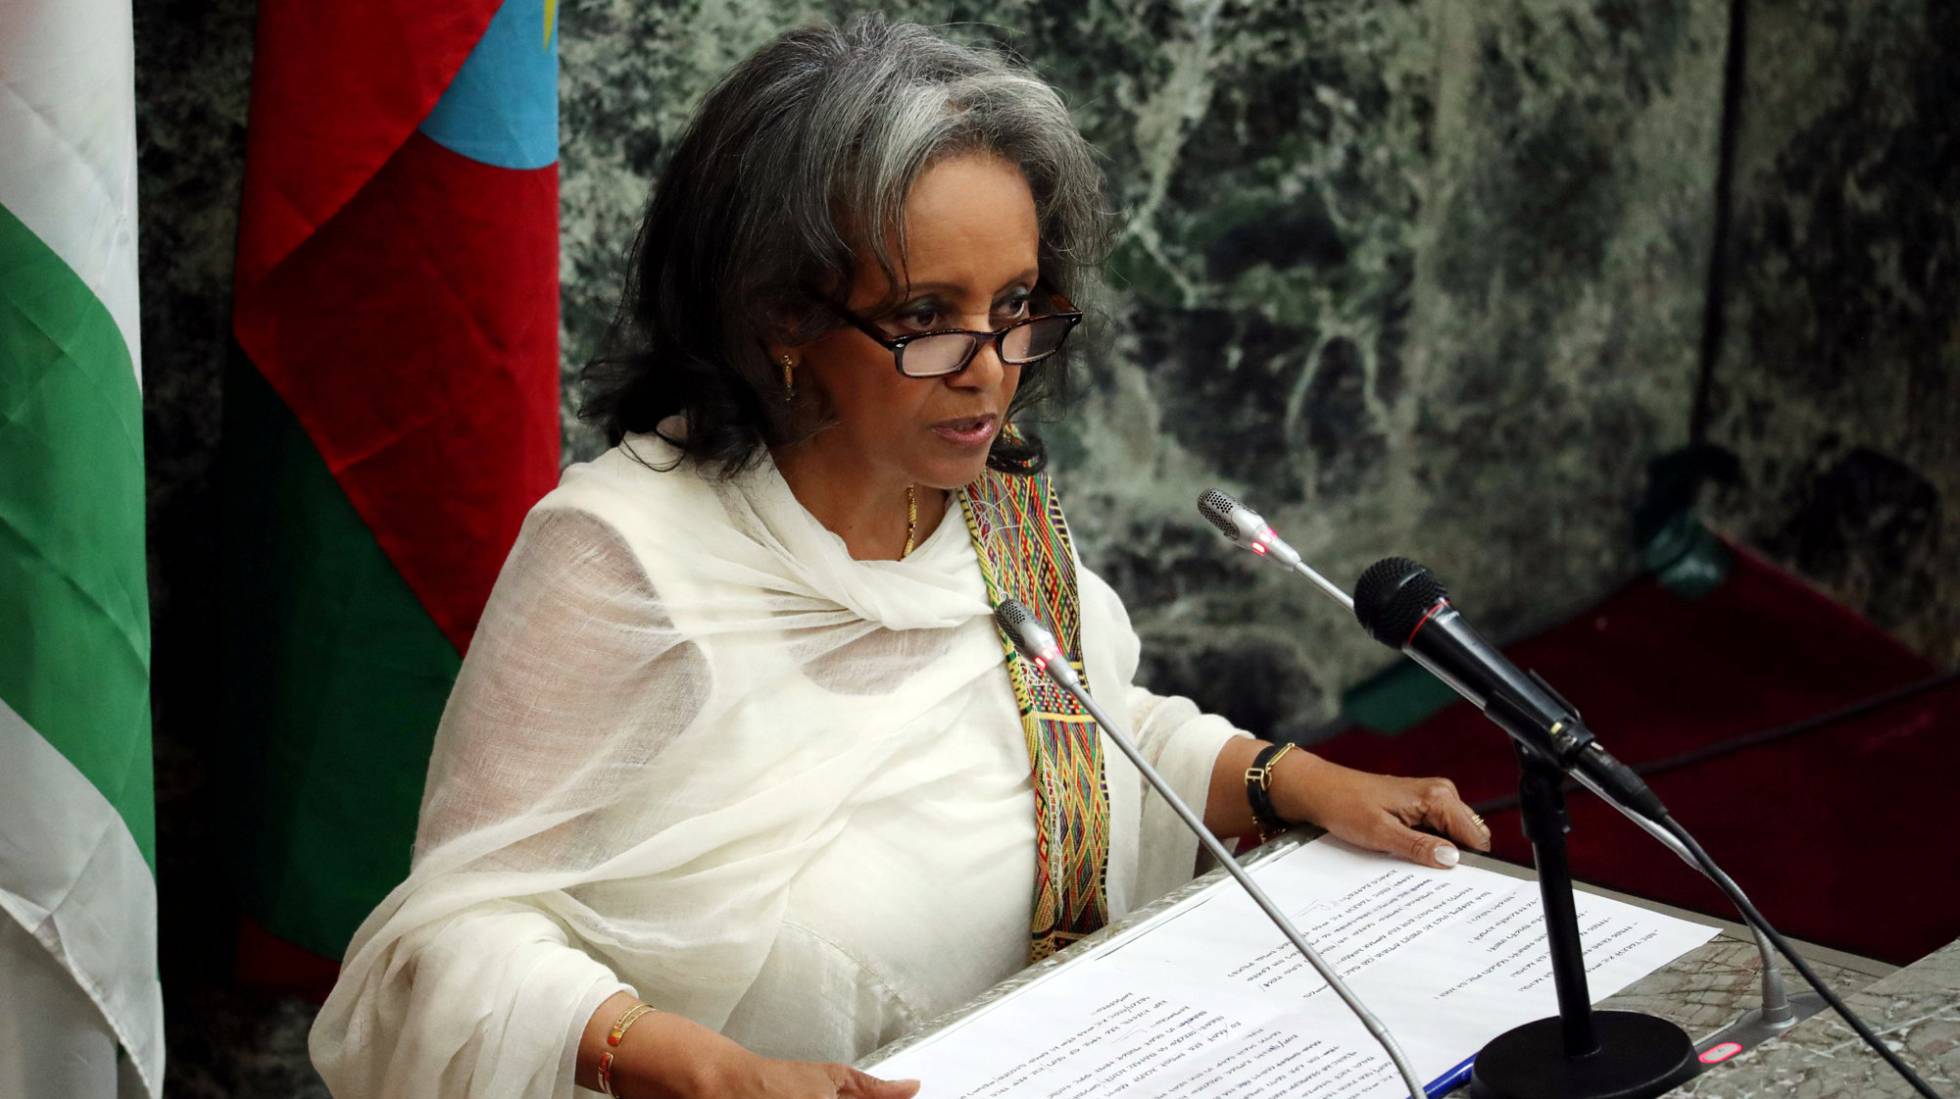 Etiopía hizo historia al nombrar a la diplomática Sahlework Zewde su Presidenta, convirtiéndose en la primera mujer en ocupar la jefatura de Estado etíope y la única actualmente en ese cargo en toda África. 